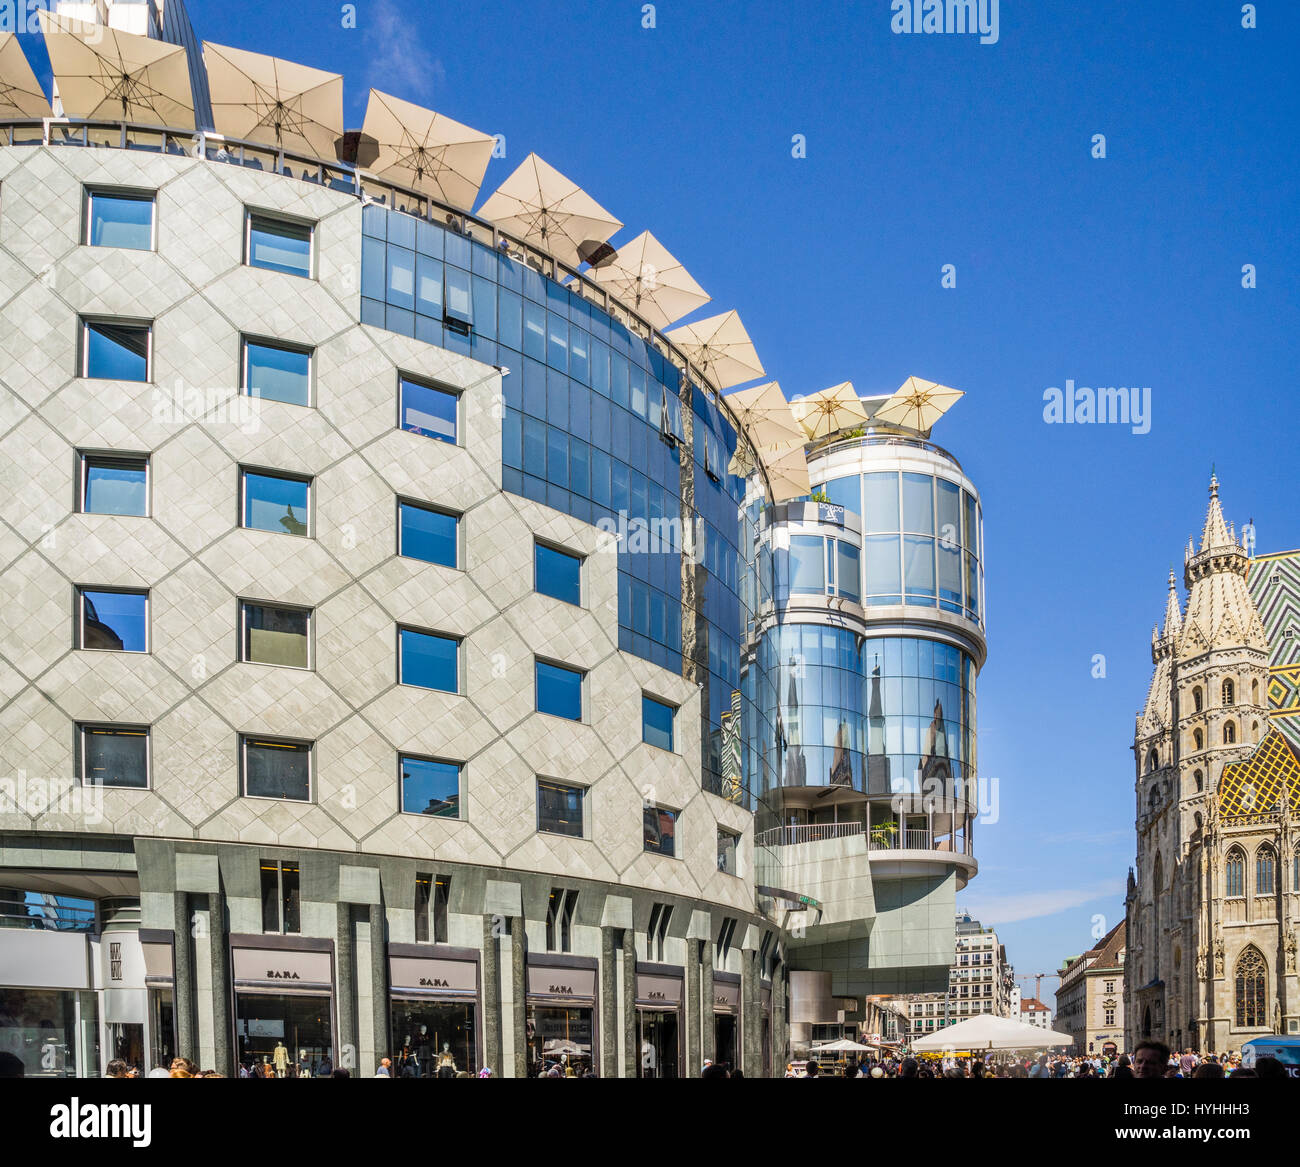 Austria, Viena, vista de la postmoderna Haas House en Stephansplatz formando un fuerte contraste con la adyacente de la Catedral de San Esteban (Stephansdom) Foto de stock